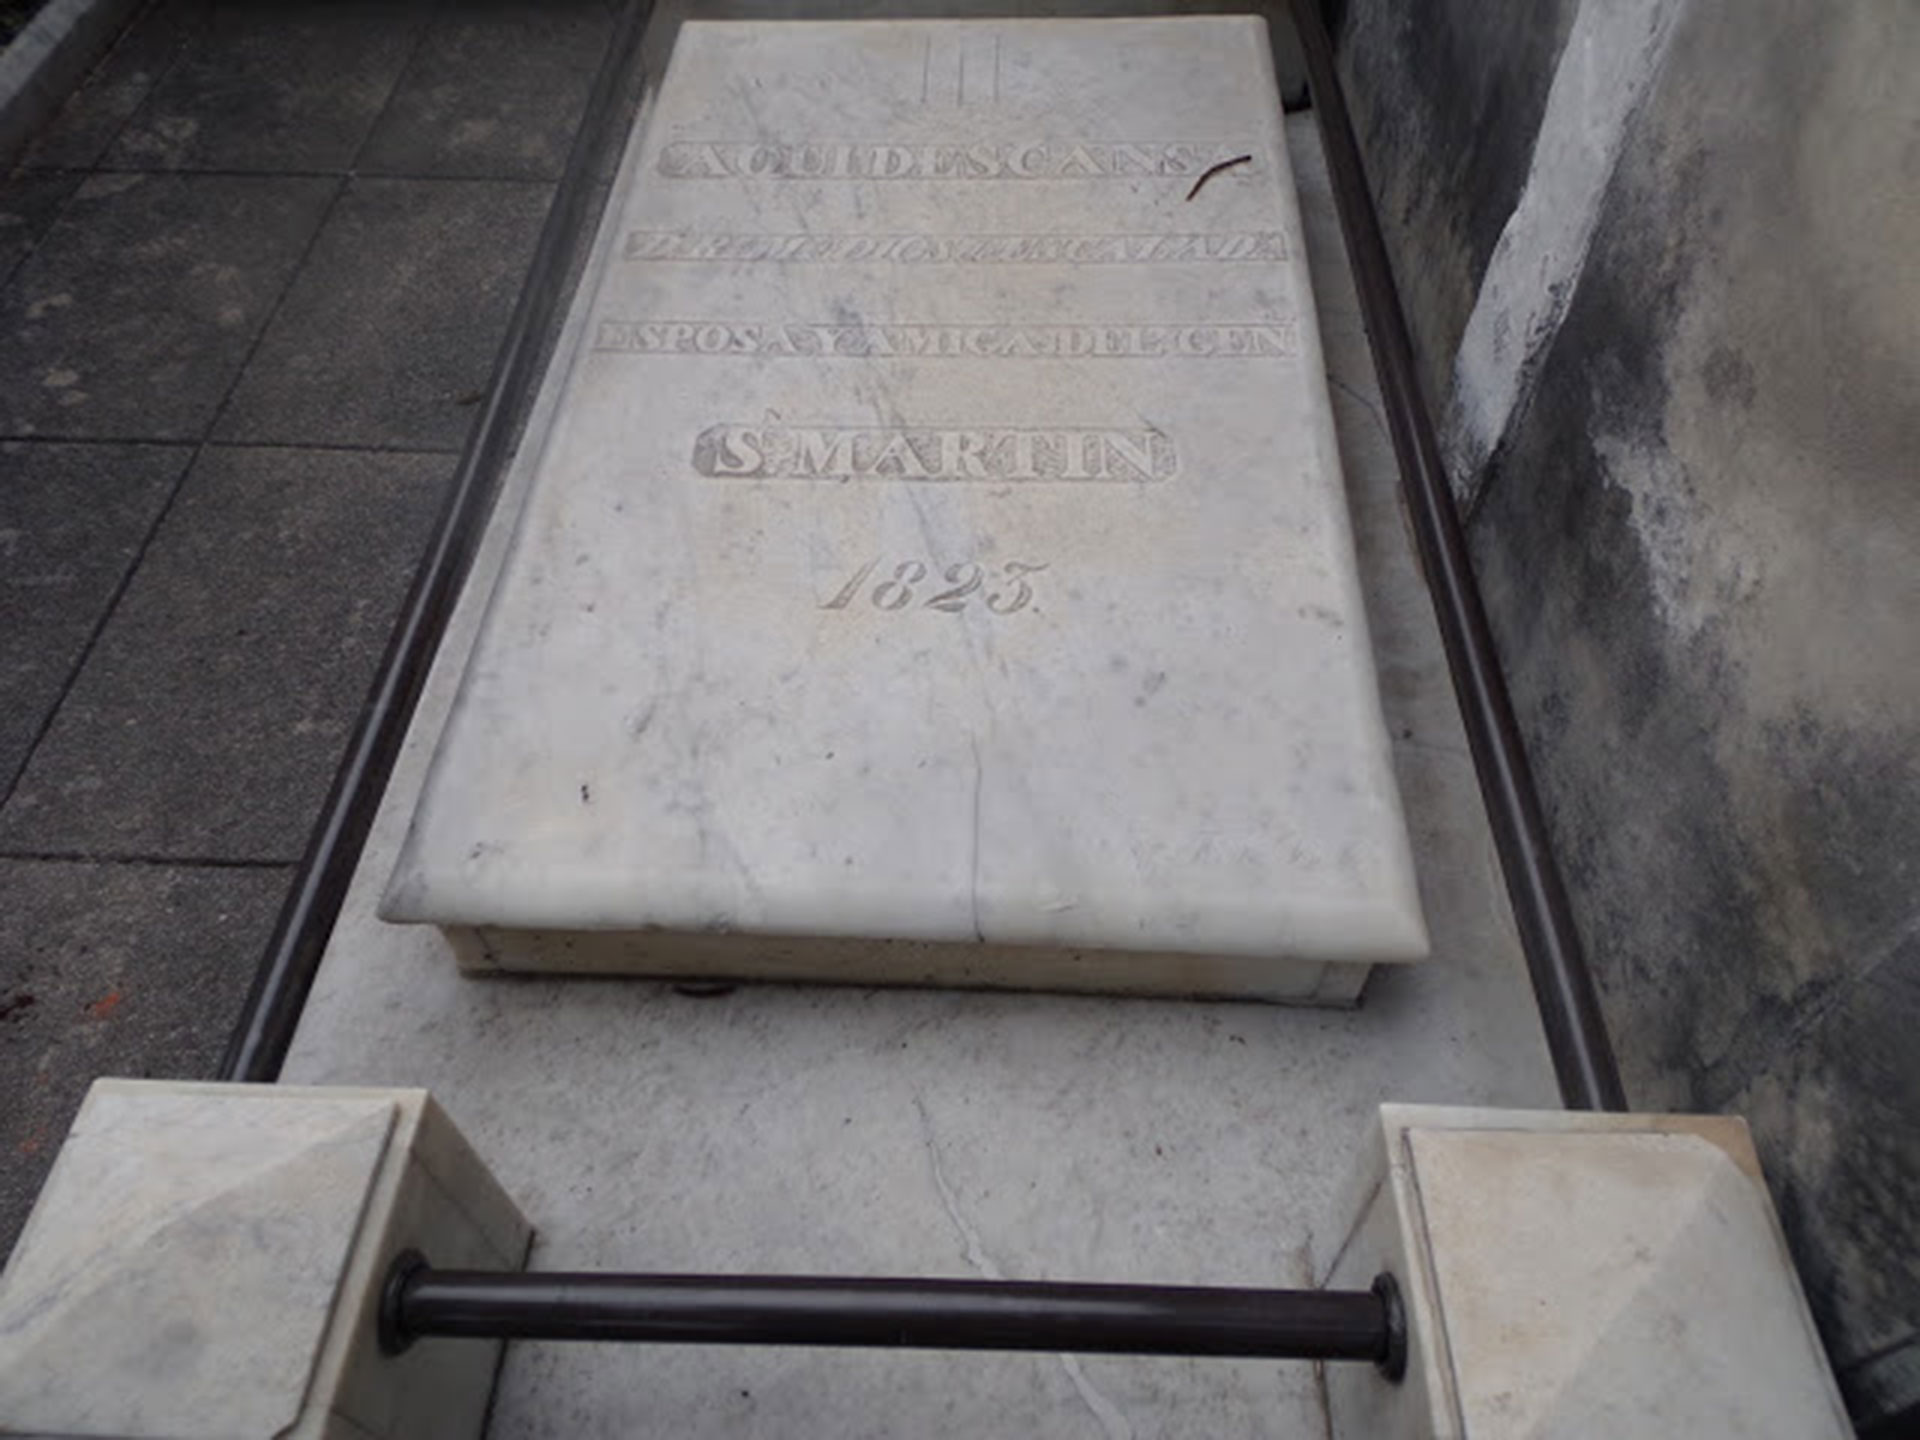 Antes de partir al exilio, San Martín mandó grabar una lápida para la tumba de su esposa